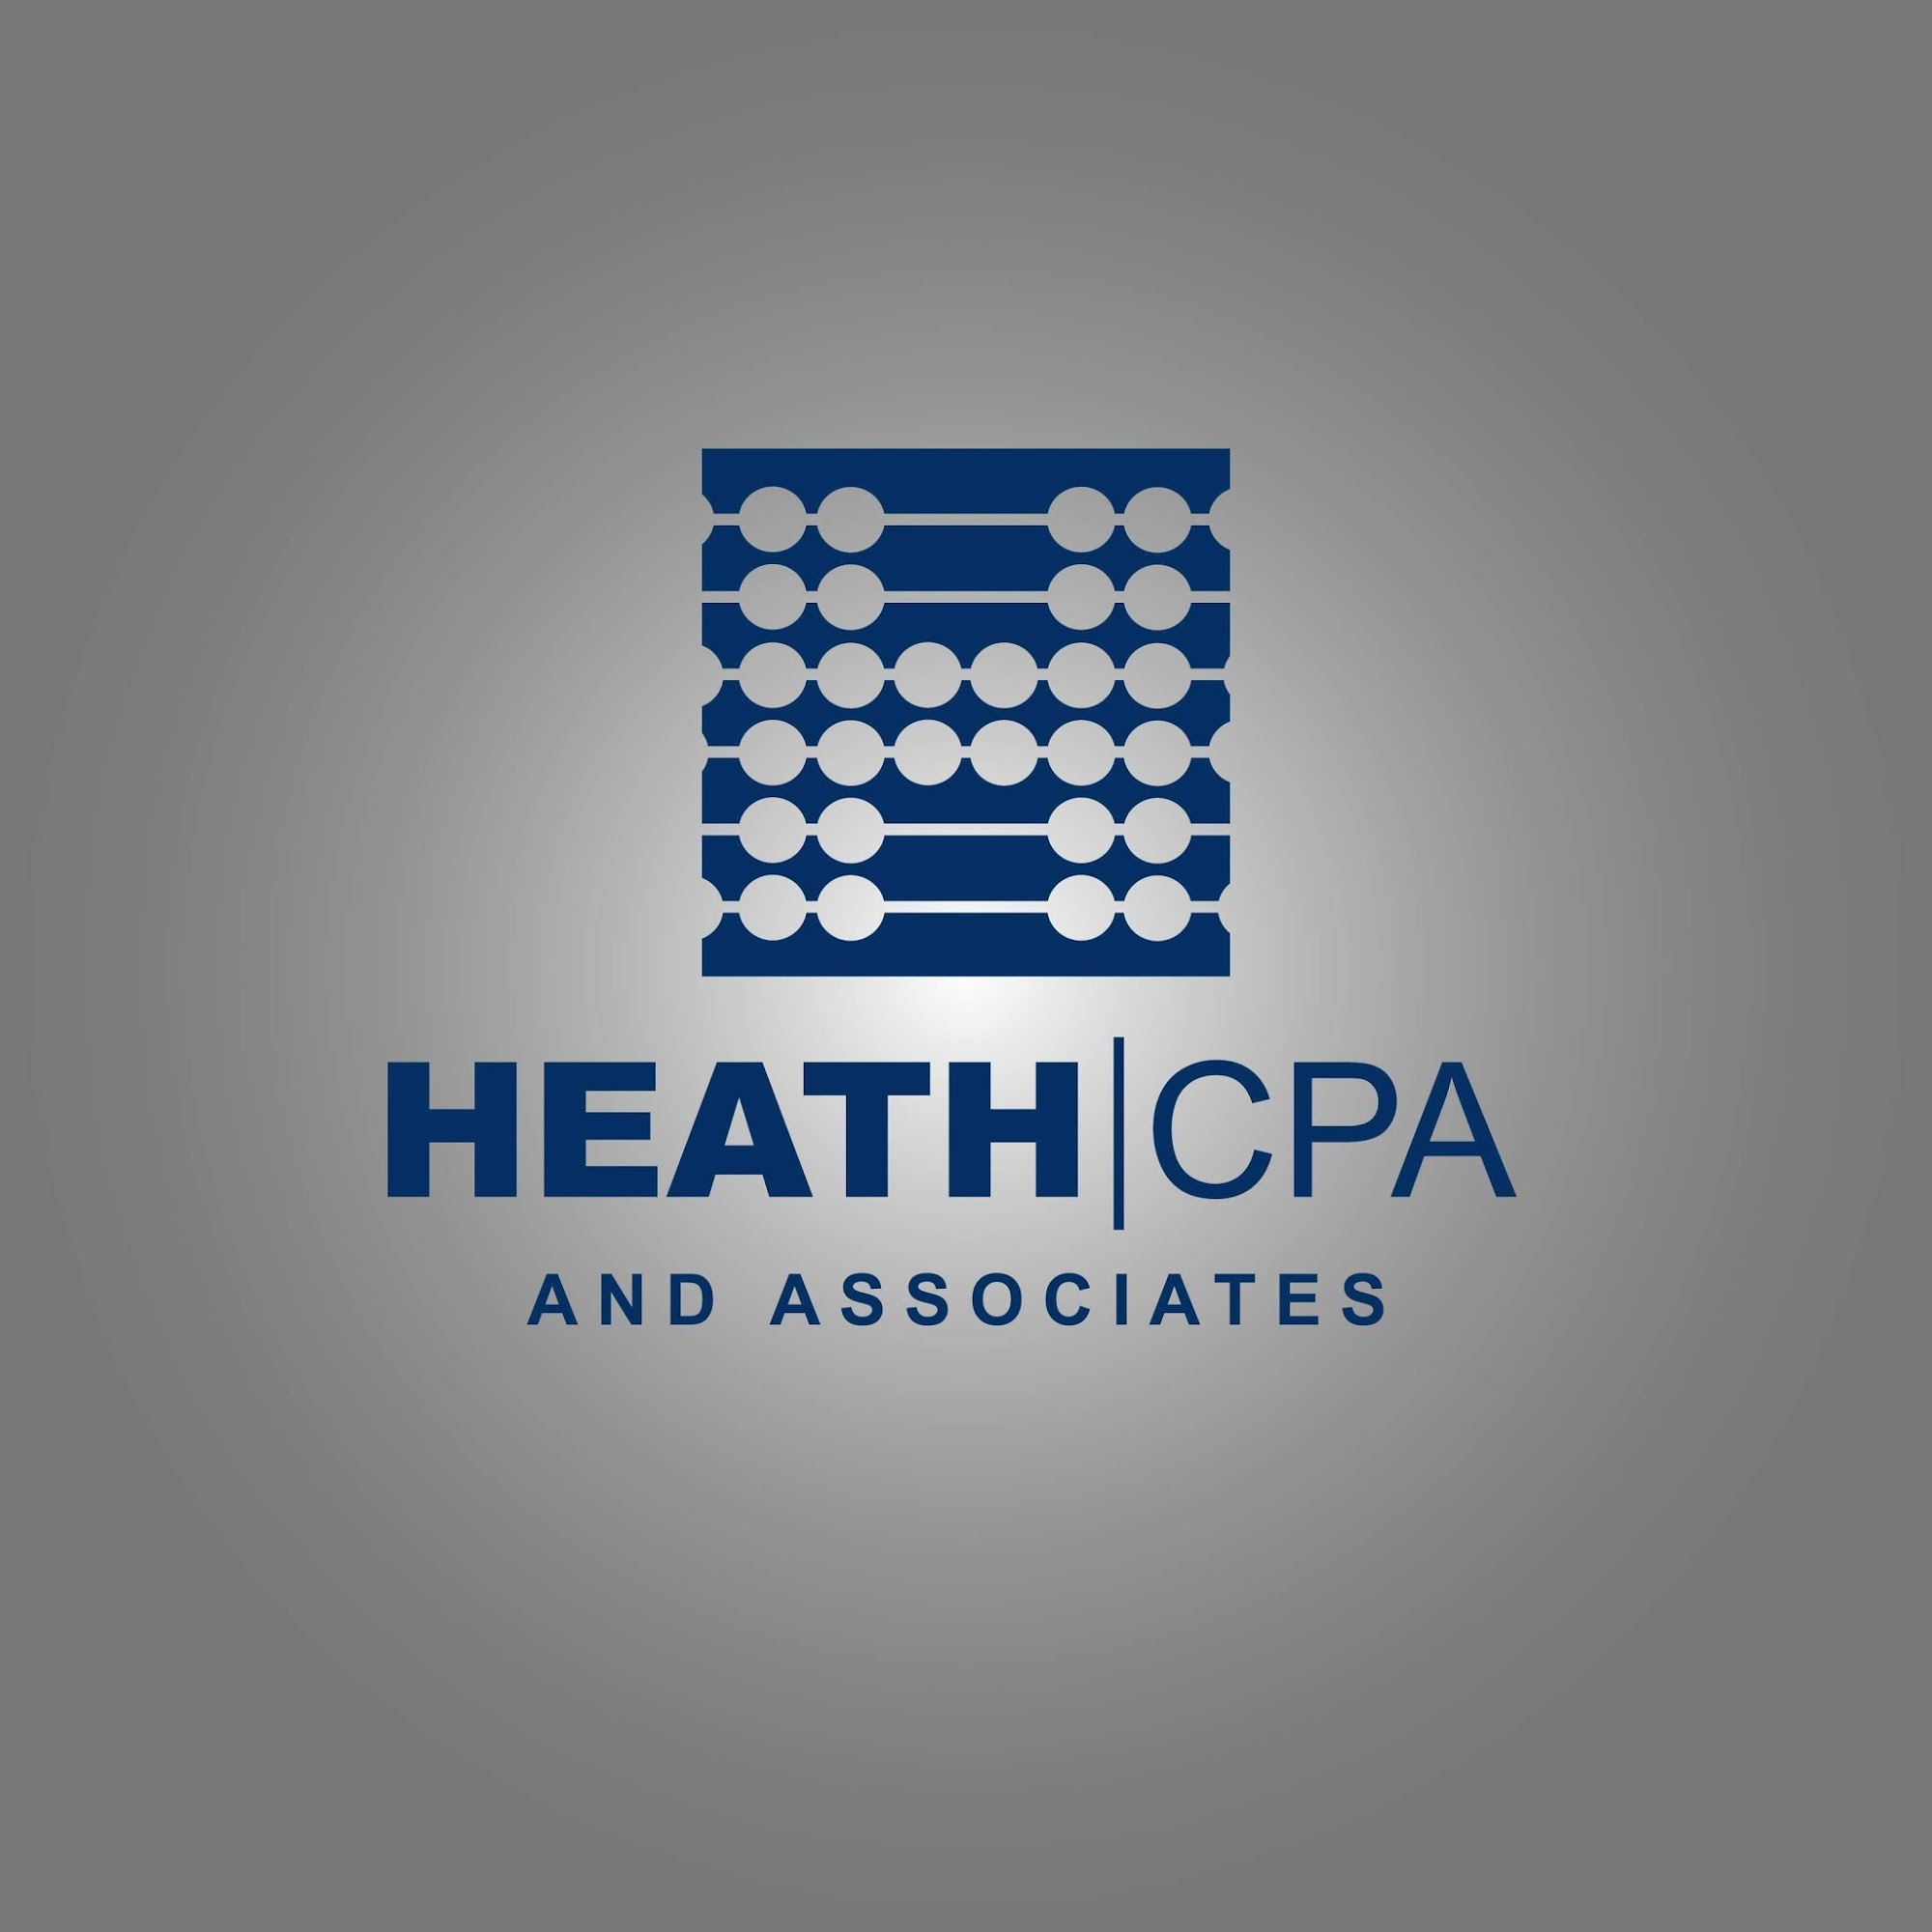 Heath CPA & Associates